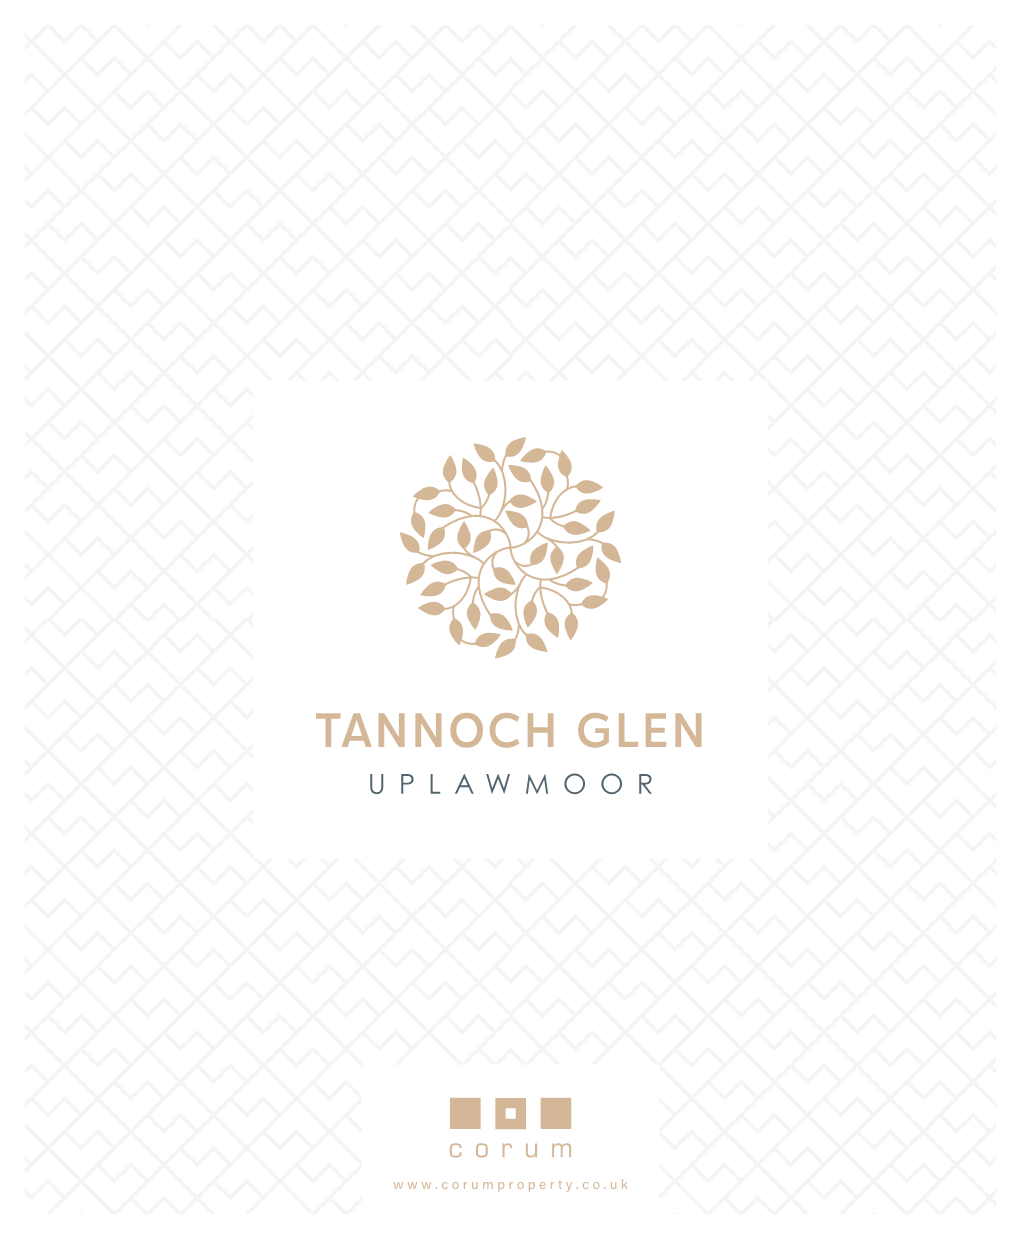 Tannoch Glen Uplawmoor